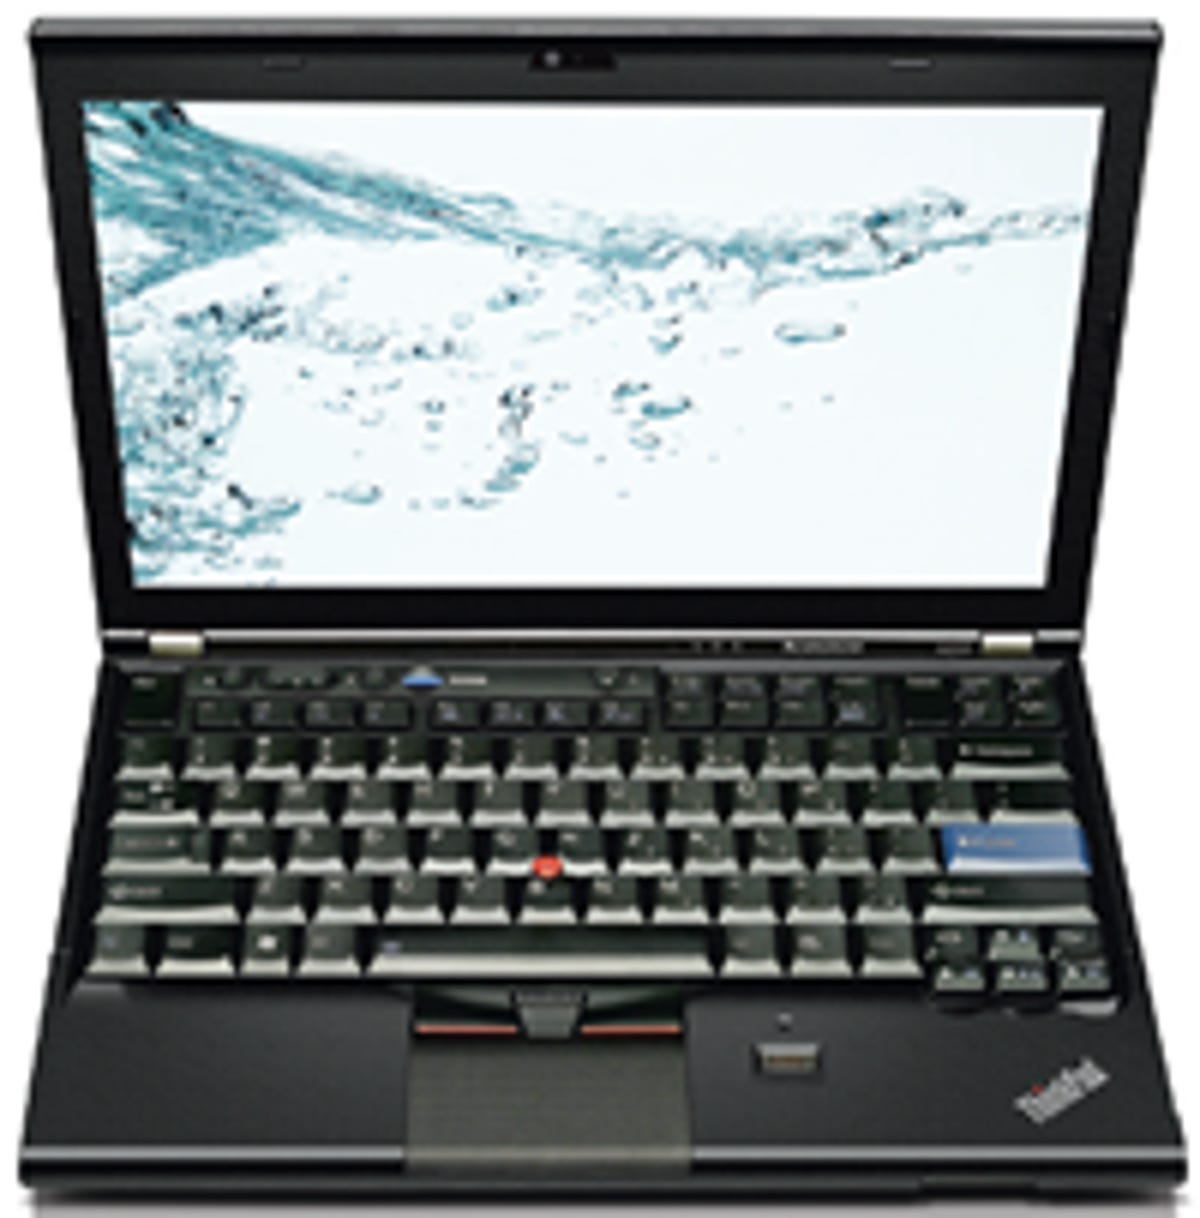 Lenovo's ThinkPad X220 ultraportable